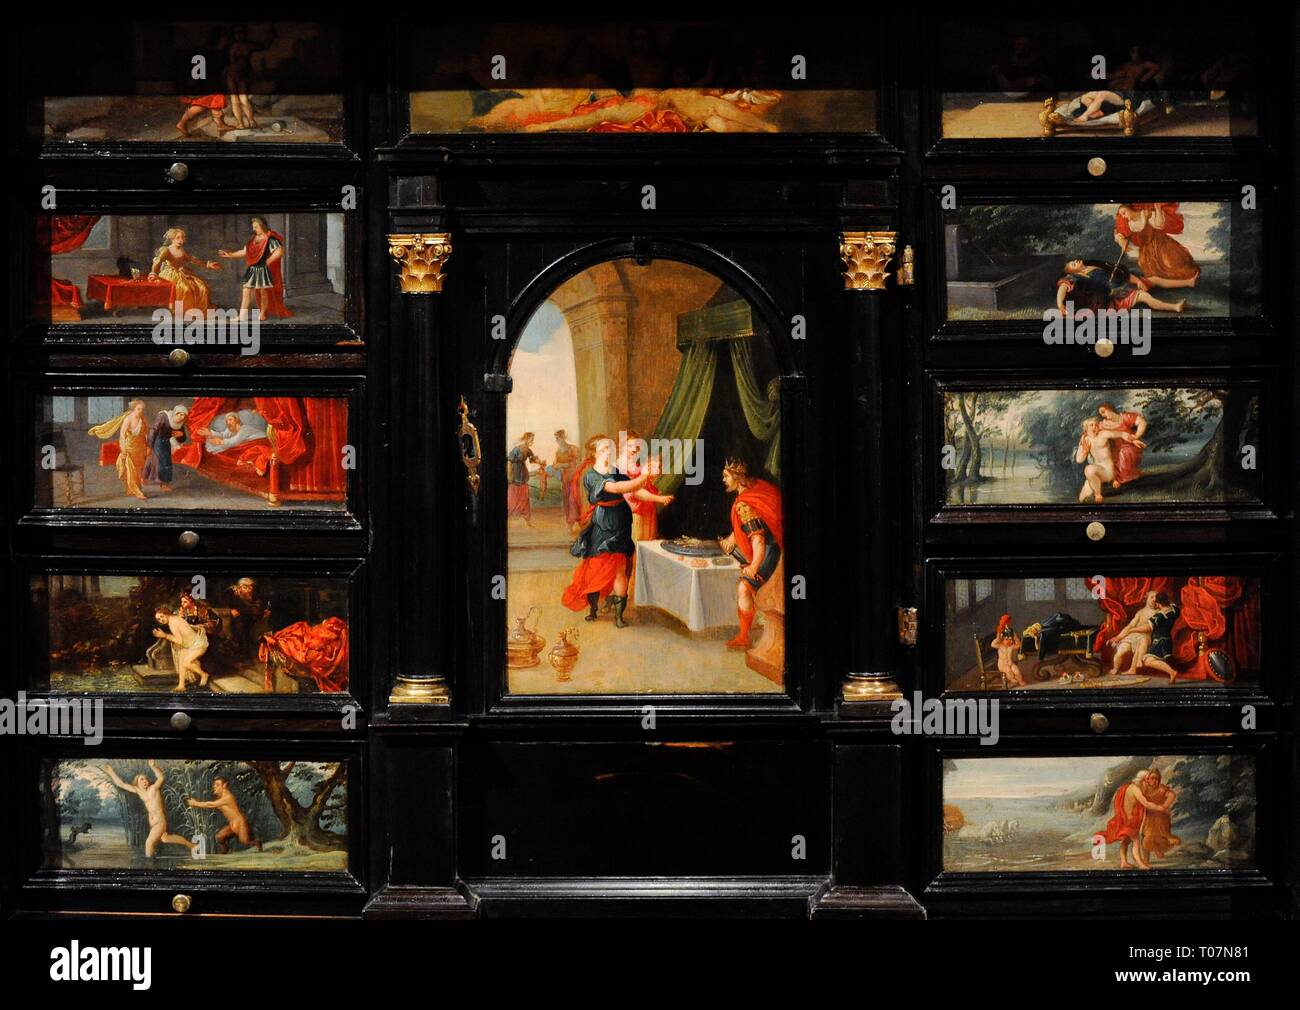 Escritorio. Amberes ( ?), vers 1650. La décoration ofrece una visión  calvinista pictórica del concepto de Amor y Belleza a través de un  recorrido por moralizante las Metamorfosis de Ovidio. Detalle. En